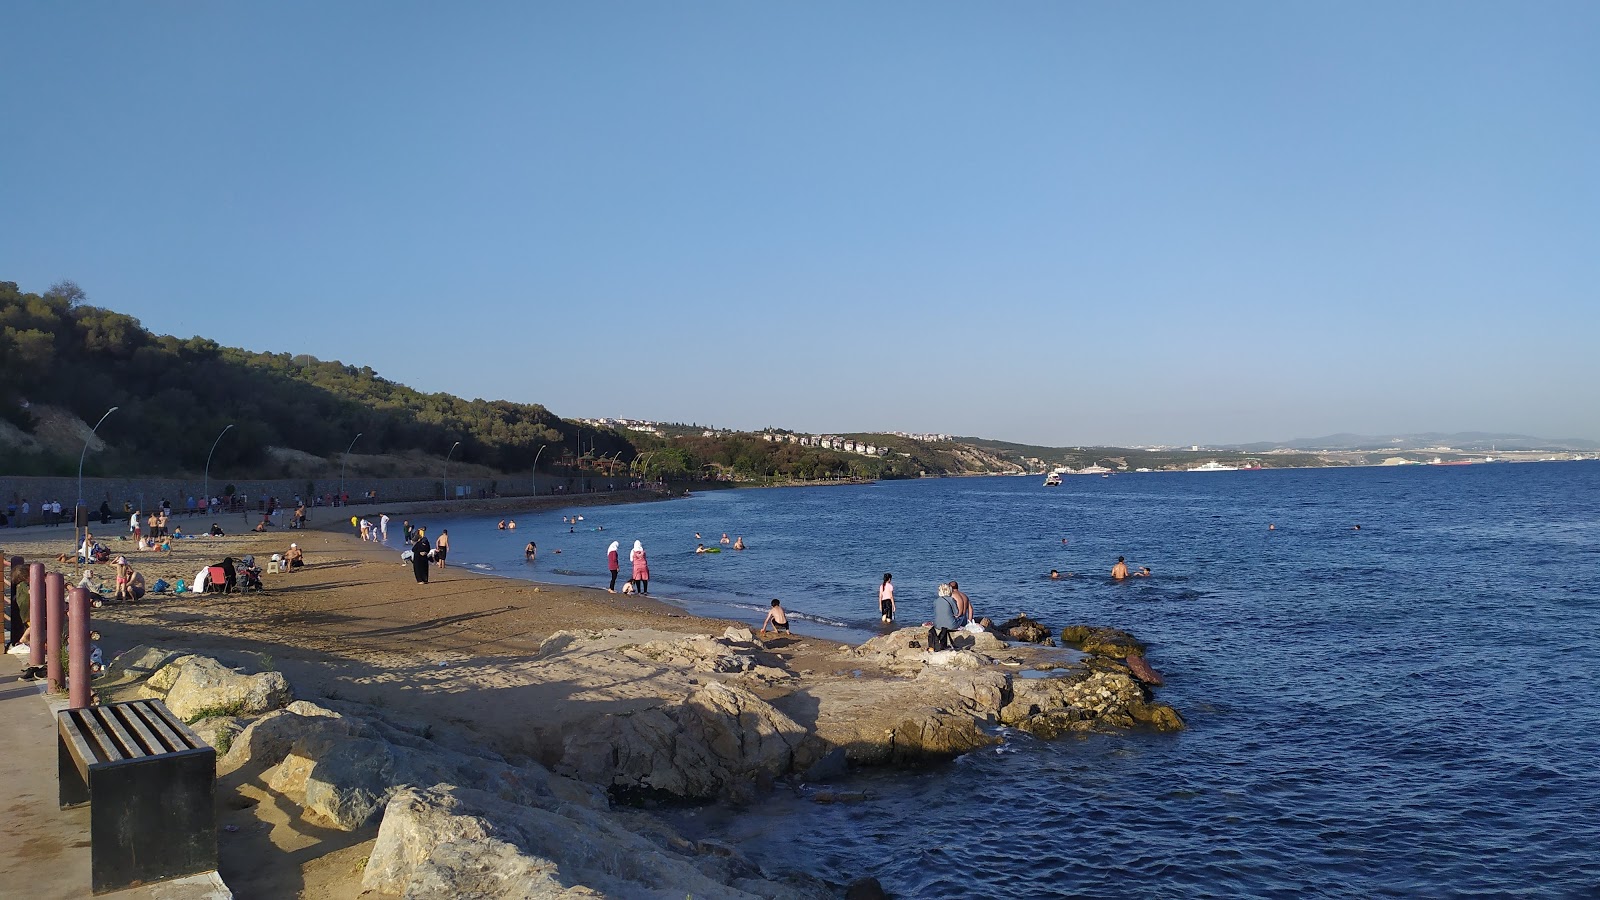 Darıca Plajı'in fotoğrafı geniş plaj ile birlikte